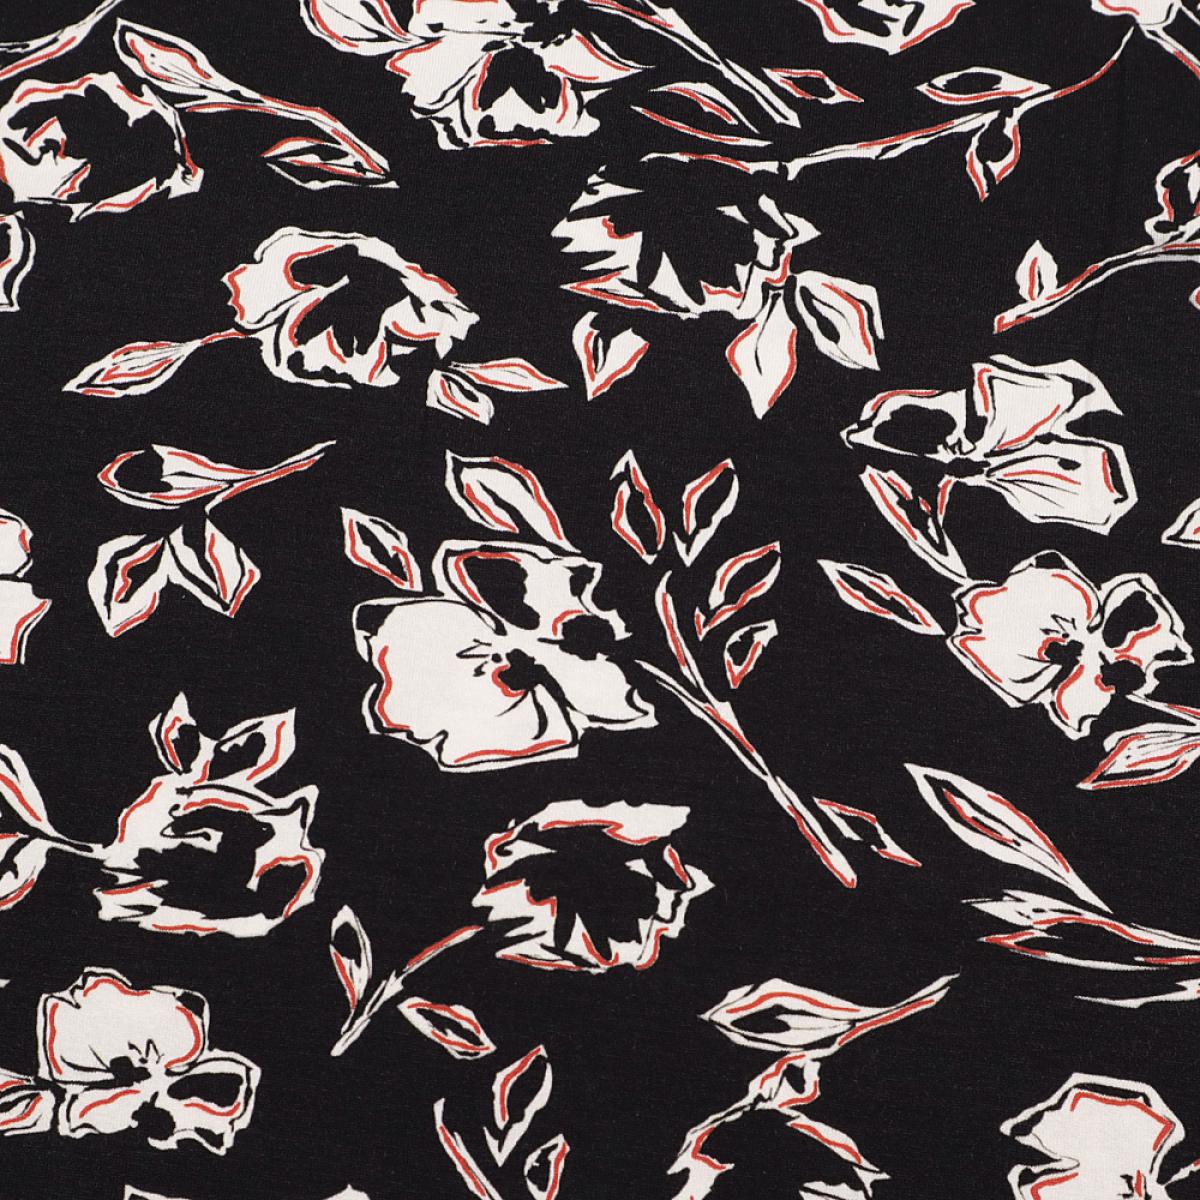 Stoff Viskose Jersey Blumenmuster Rosen Design schwarz rot weiß Kleiderstoff Kinderstoff